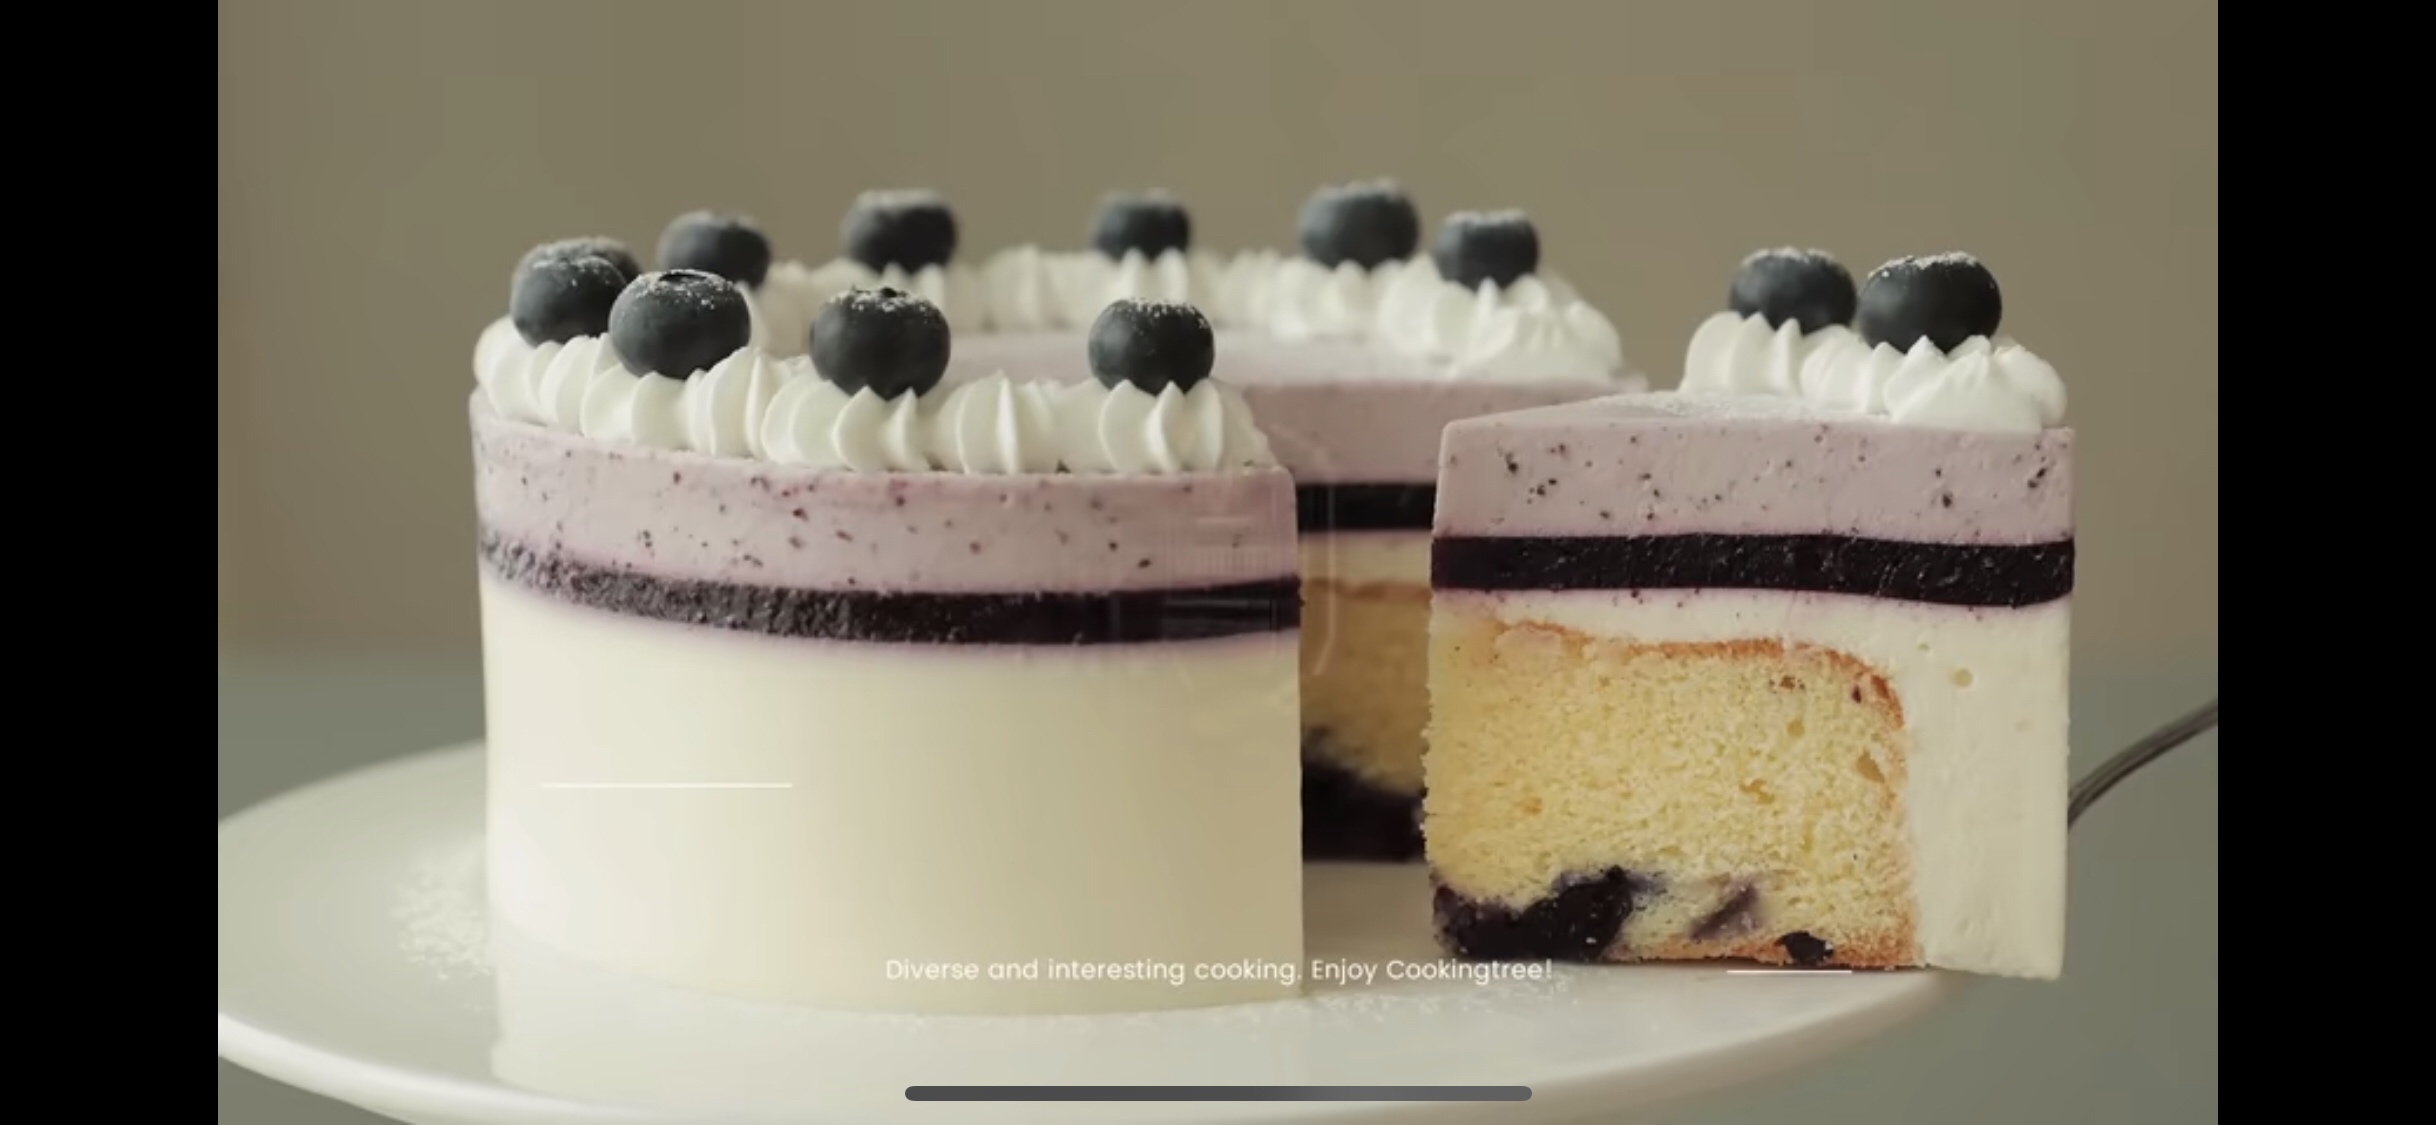 【搬运】Cookingtree蓝莓芝士蛋糕的做法